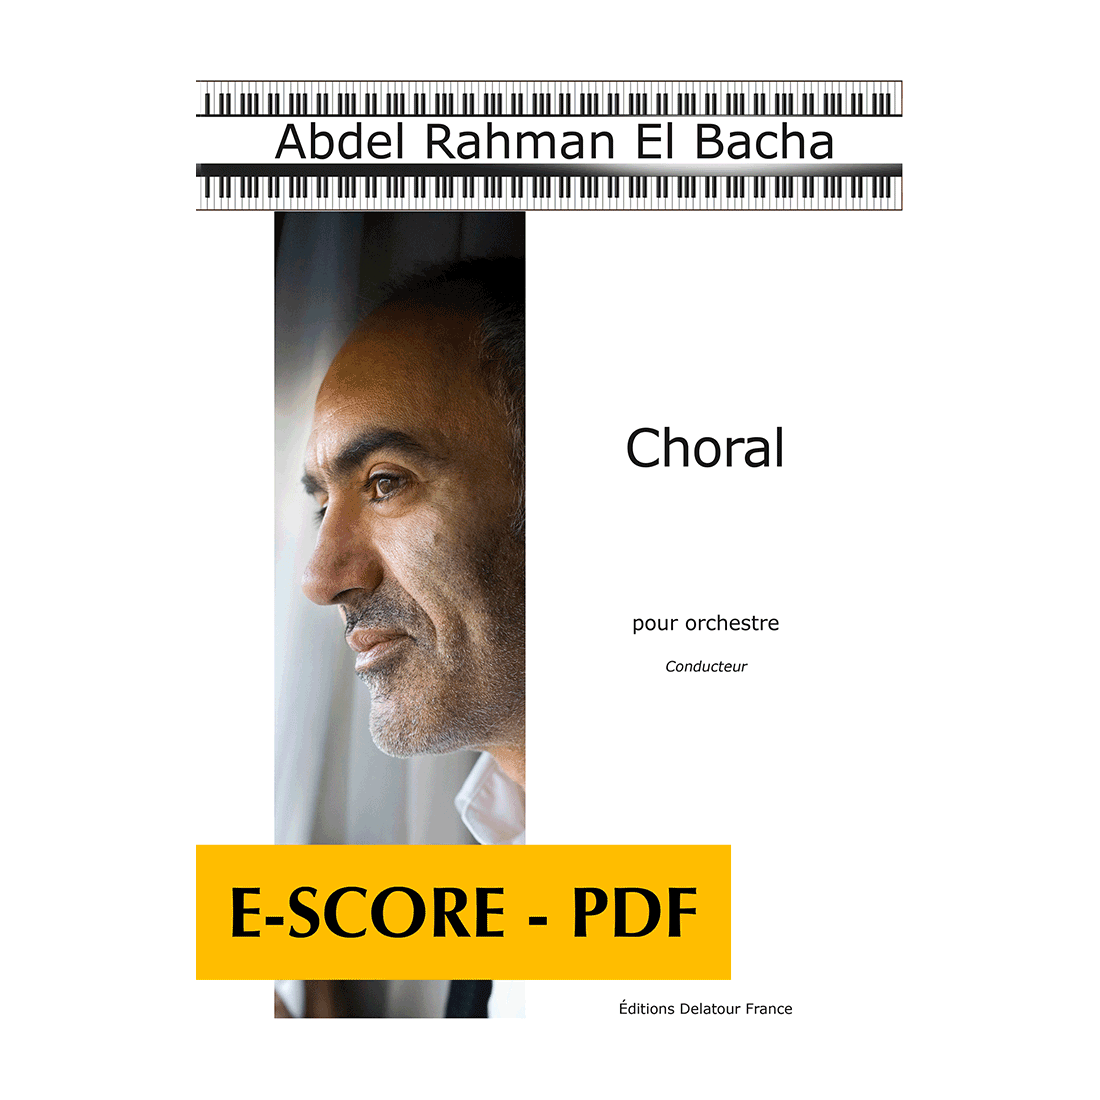 Choral für Orchester (FULL SCORE) - E-score PDF